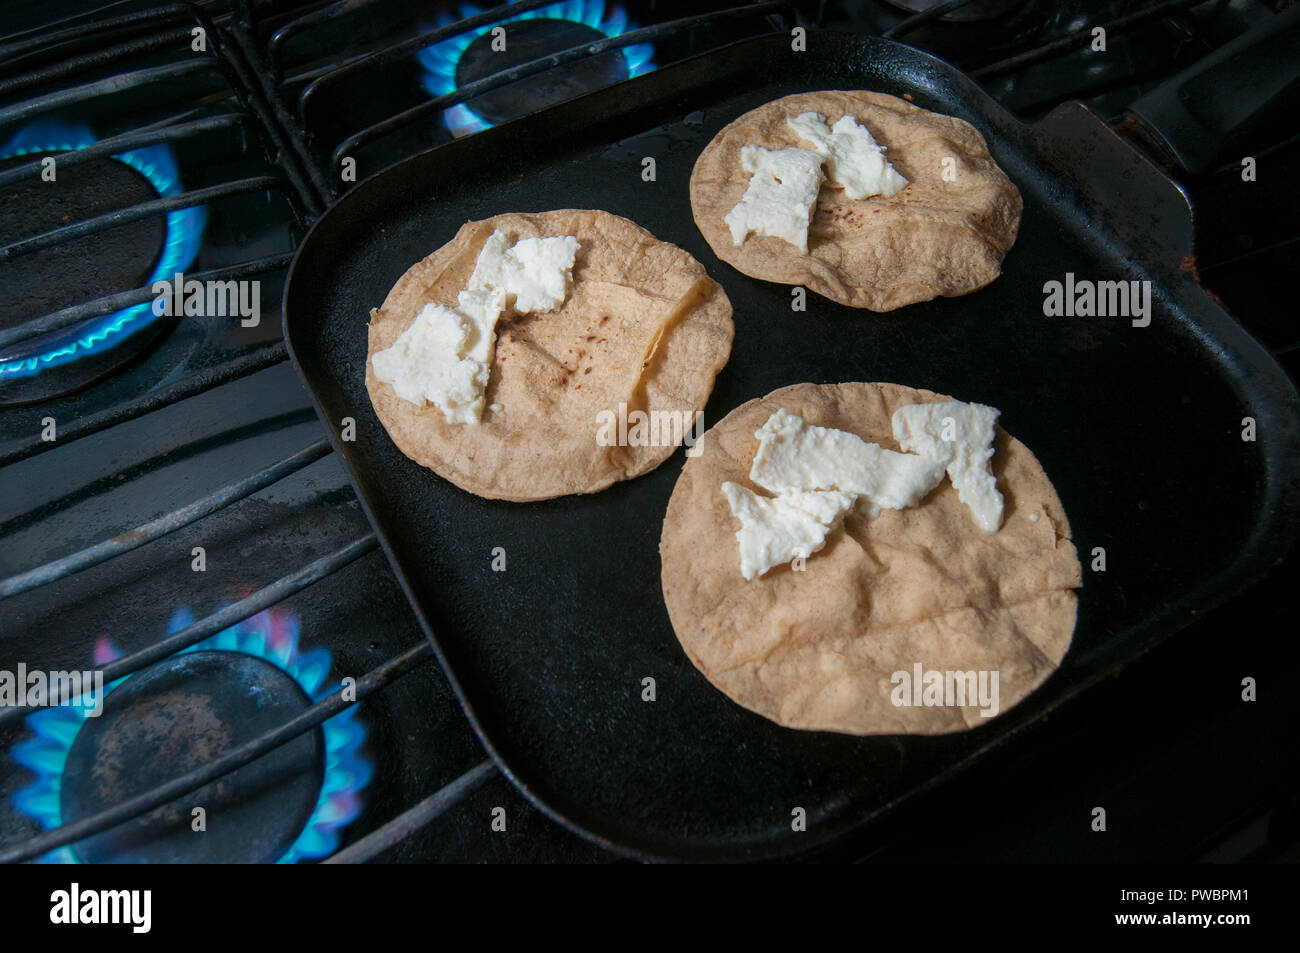 https://c8.alamy.com/compes/pwbpm1/las-tortillas-y-el-queso-en-la-parte-superior-de-un-comal-para-hacer-quesadillas-snack-y-companero-de-comida-mexicana-pwbpm1.jpg